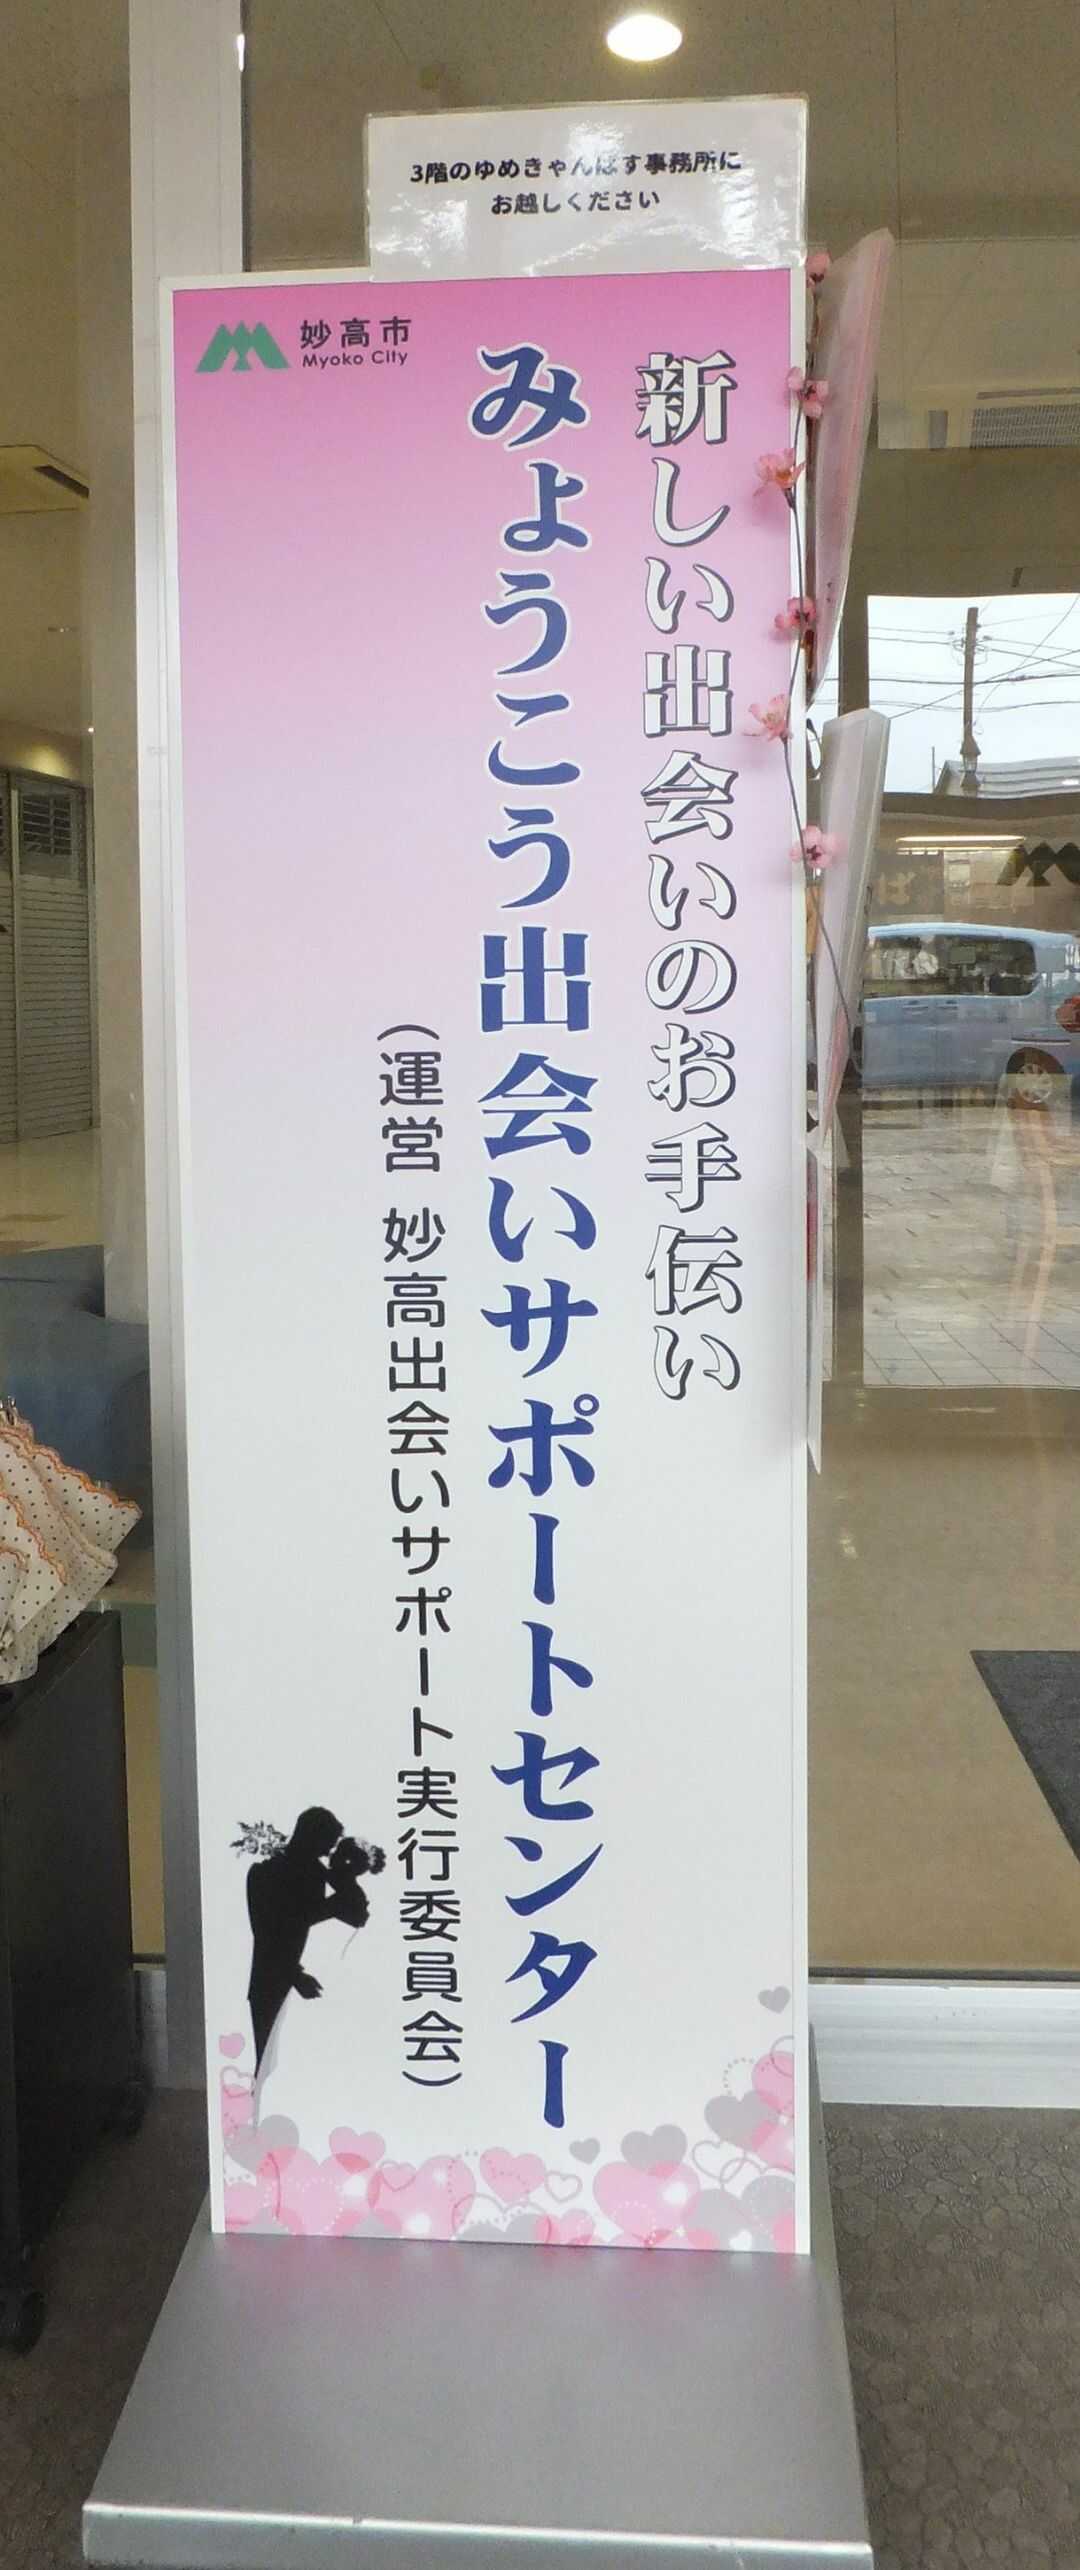 新潟県妙高市にある「みょうこう出会いサポートセンター」の看板